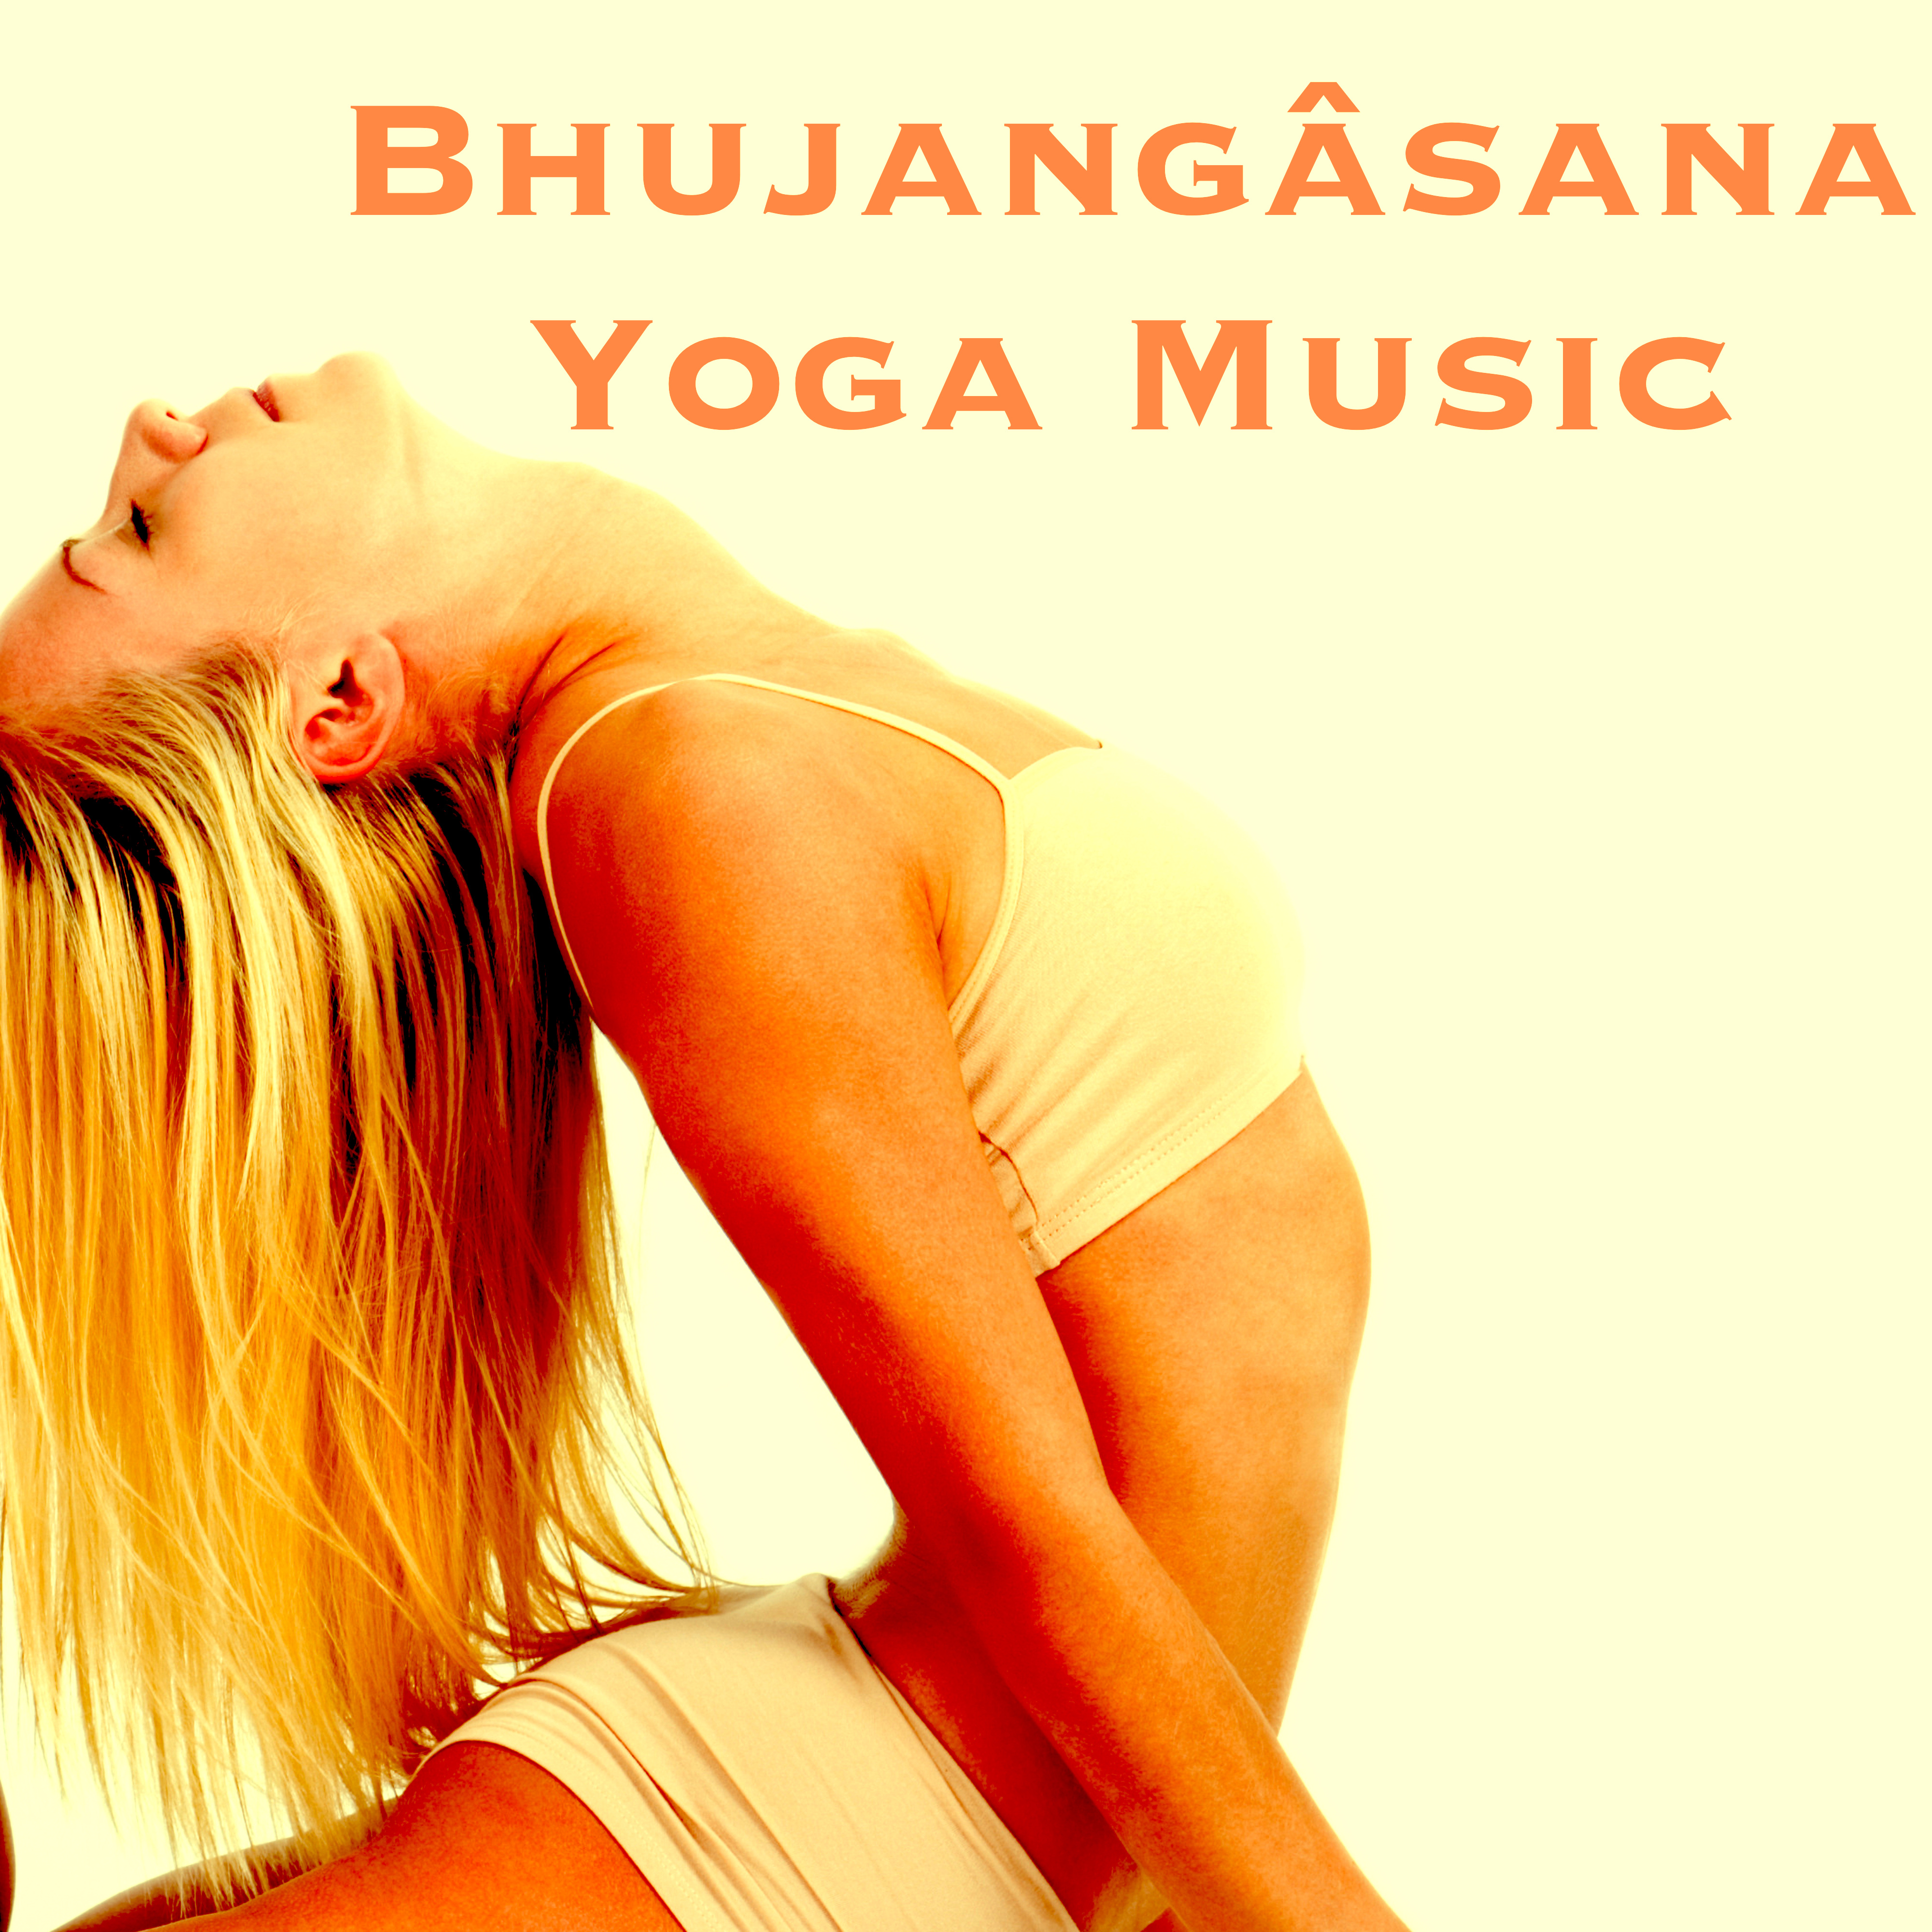 Bhujang sana Yoga Music  Playlist for Yoga Class, Meditation, Relaxation, Concentration  Yoga Poses for Good Sleep